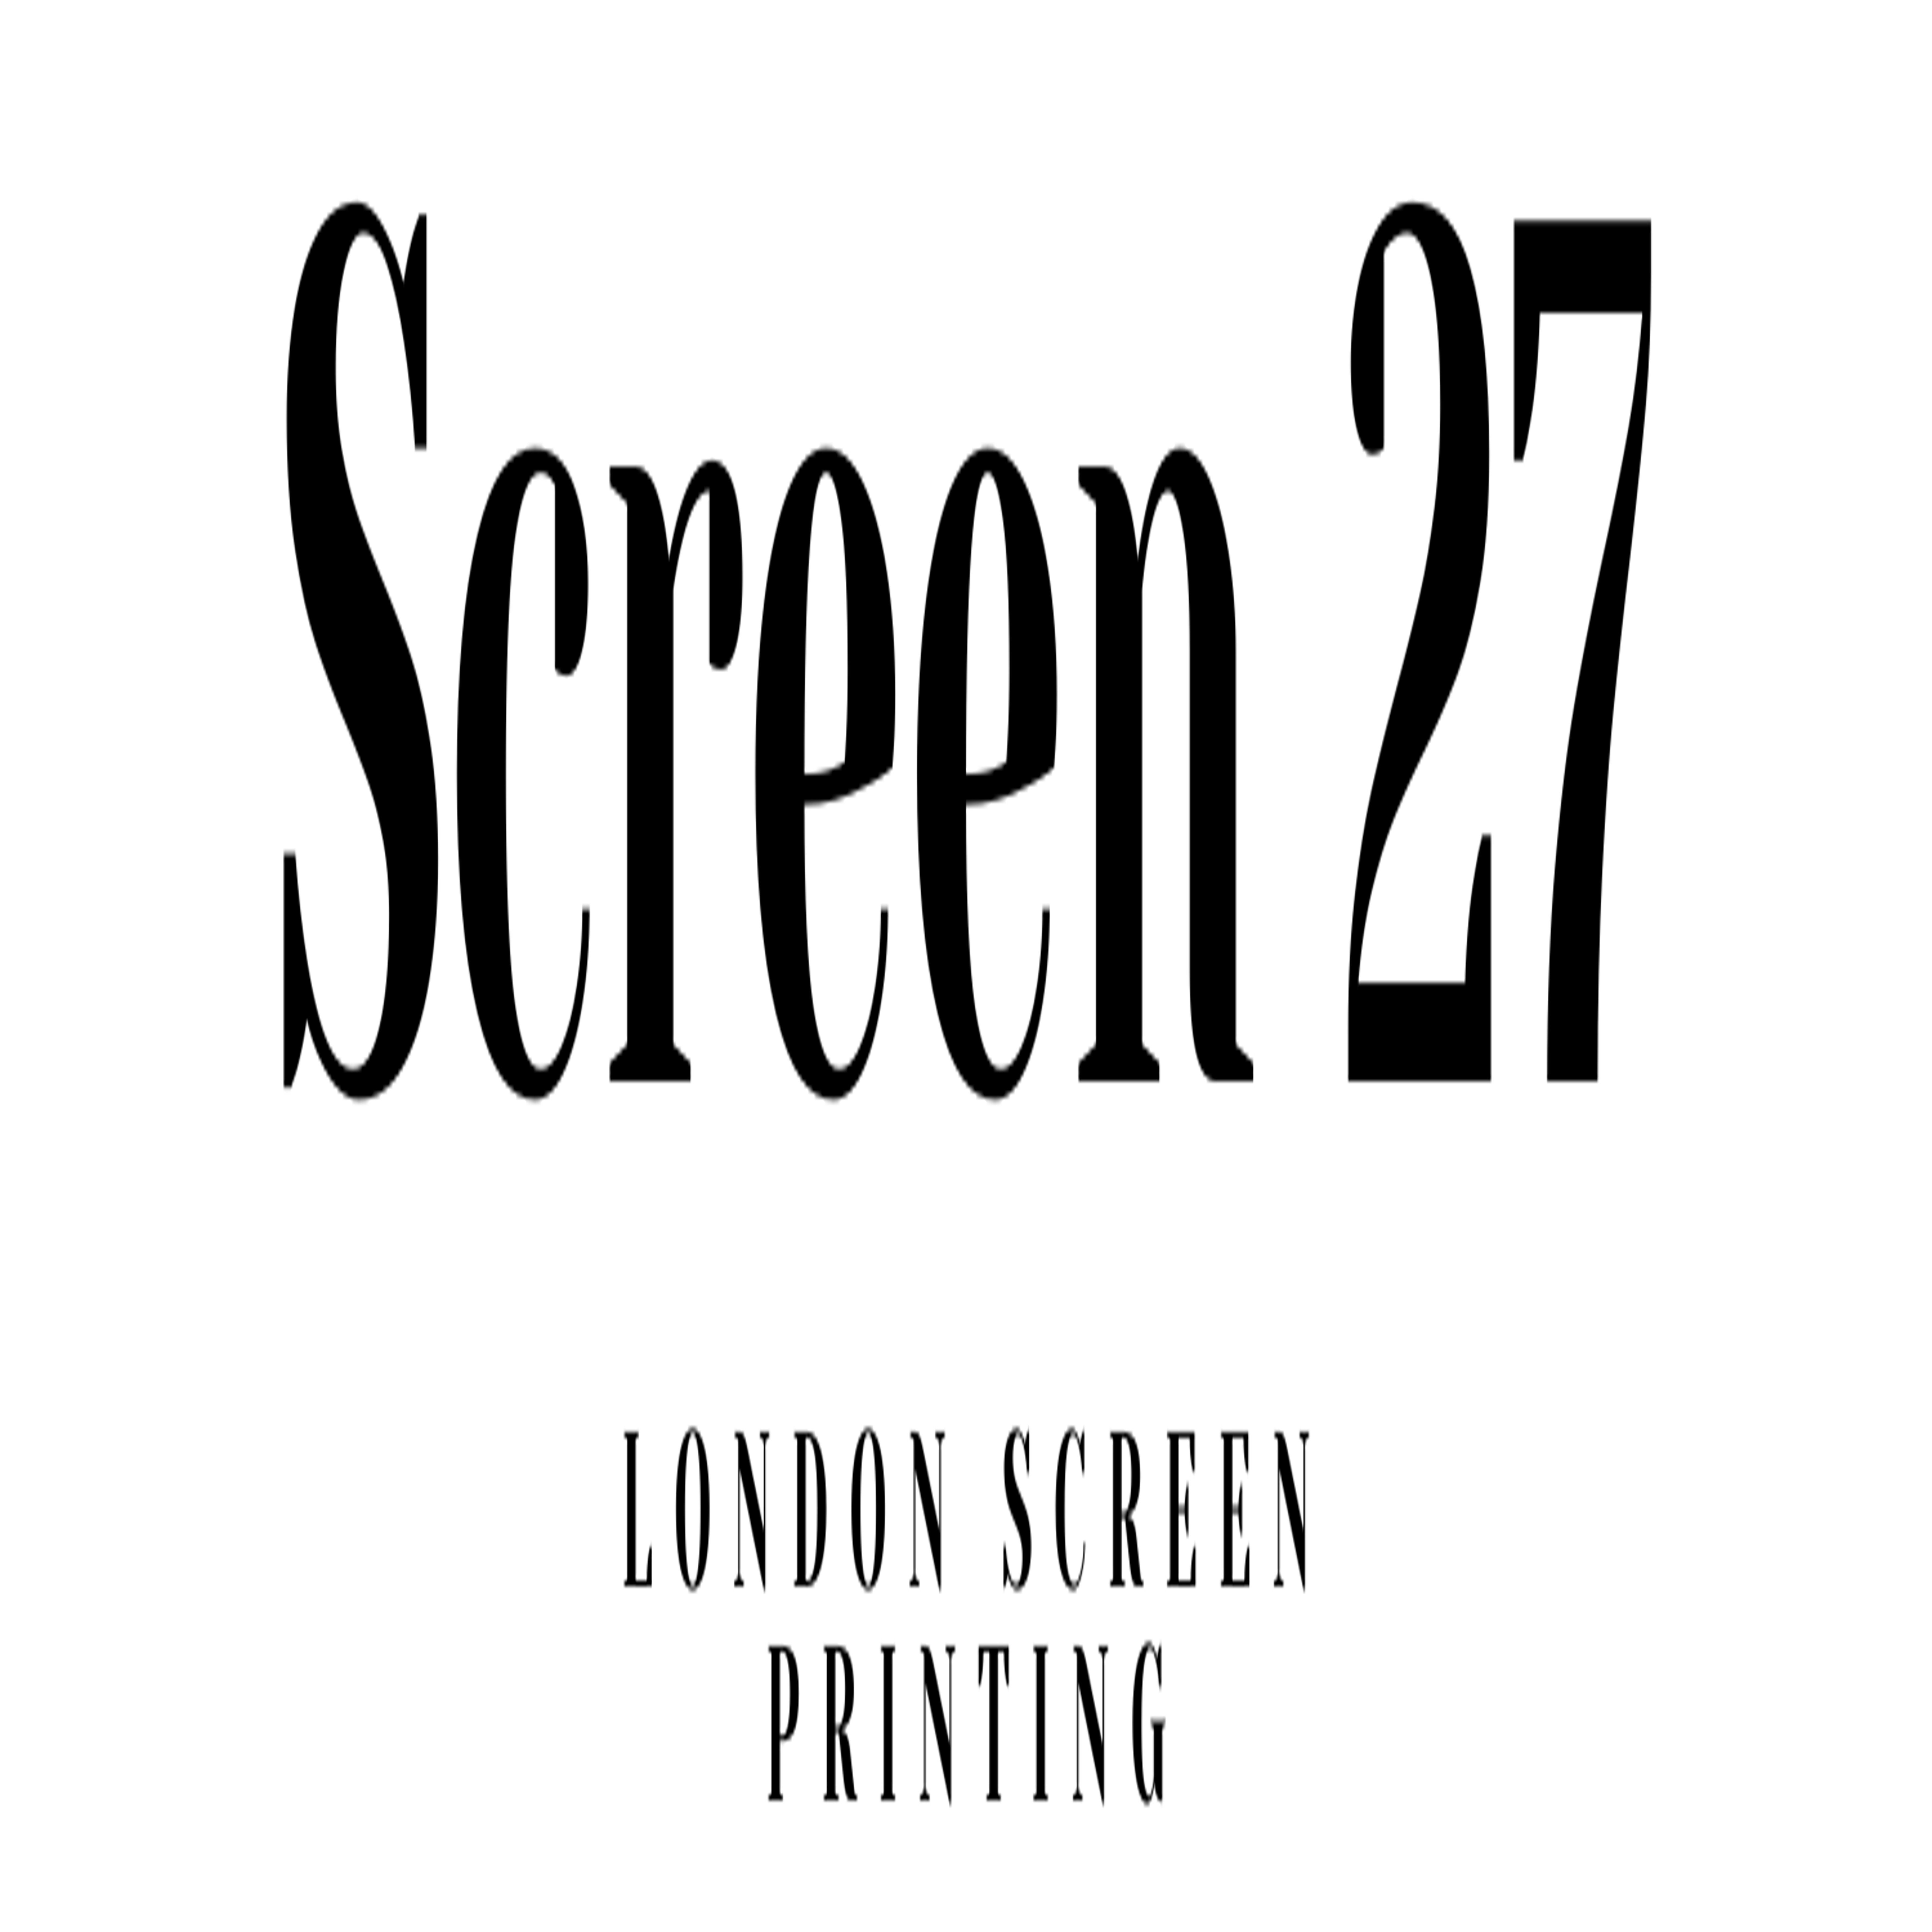 London Screen Printers